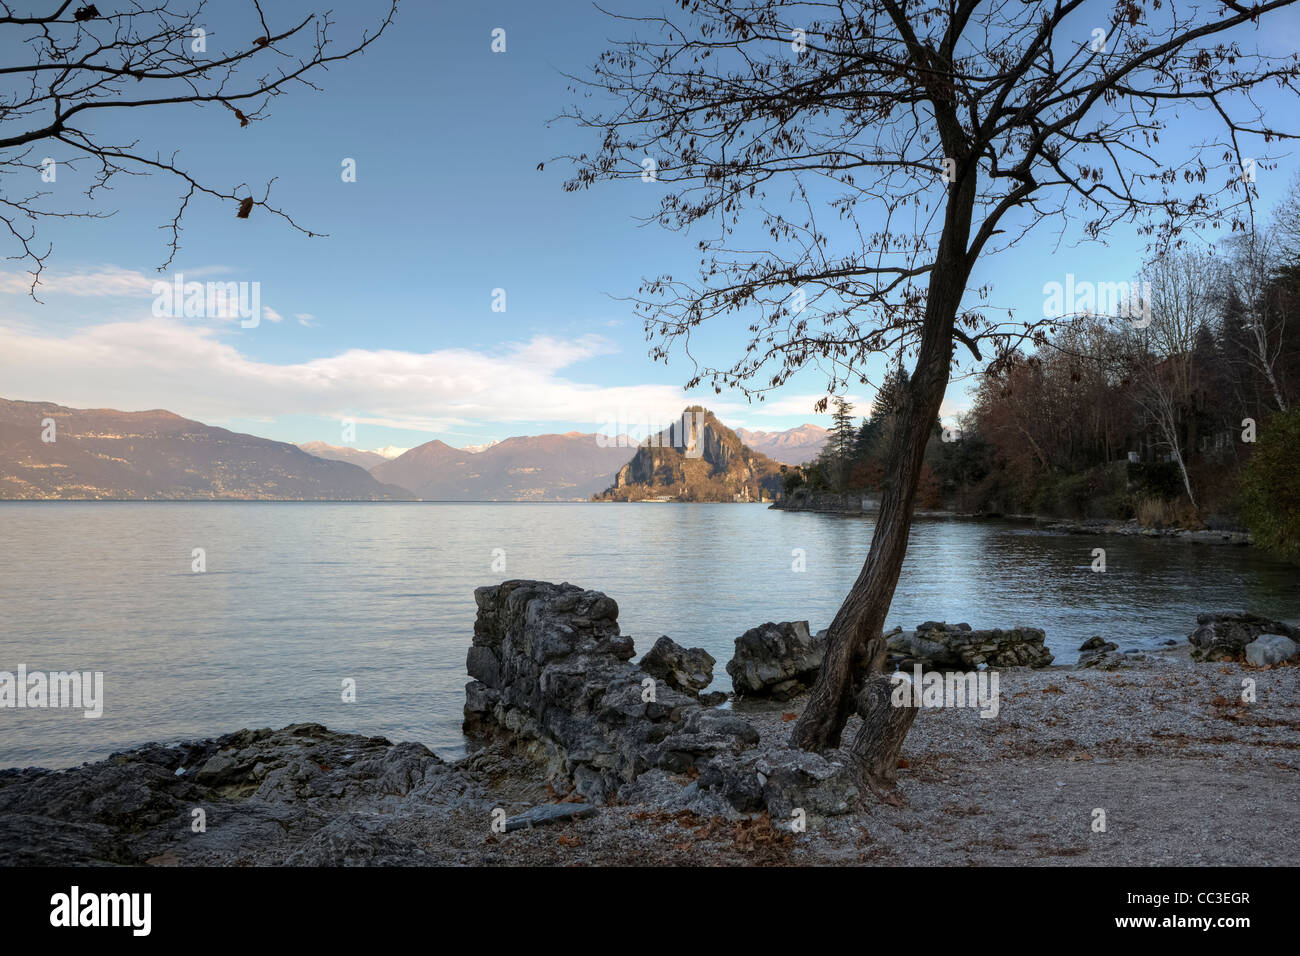 Cinque arcate Bay sur le Lac Majeur, dans la Lombardie, Italie près de la ville de Laveno et rochers calcaires de Rocca di Calde Banque D'Images